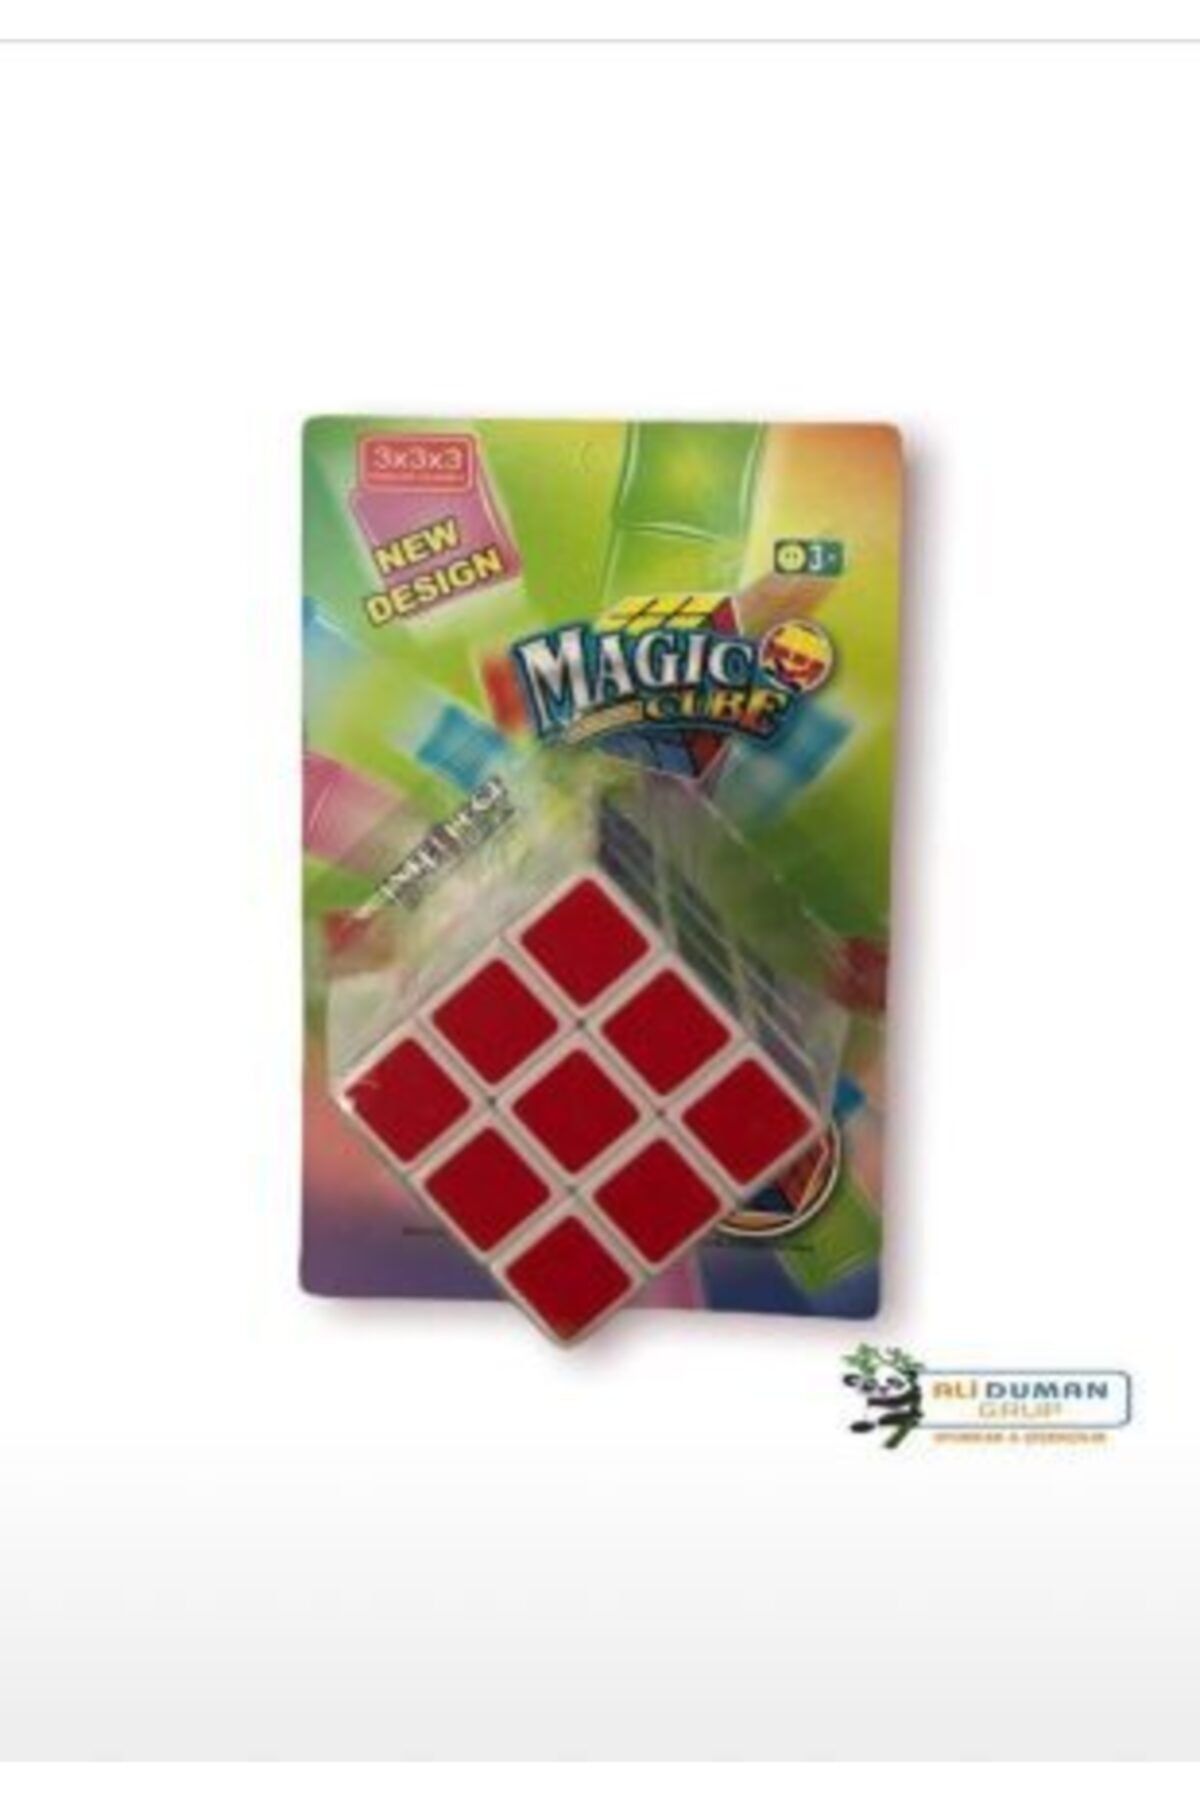 Miraç Cube Magic Cube 3x3x3 Sihirli  Zeka Küpü